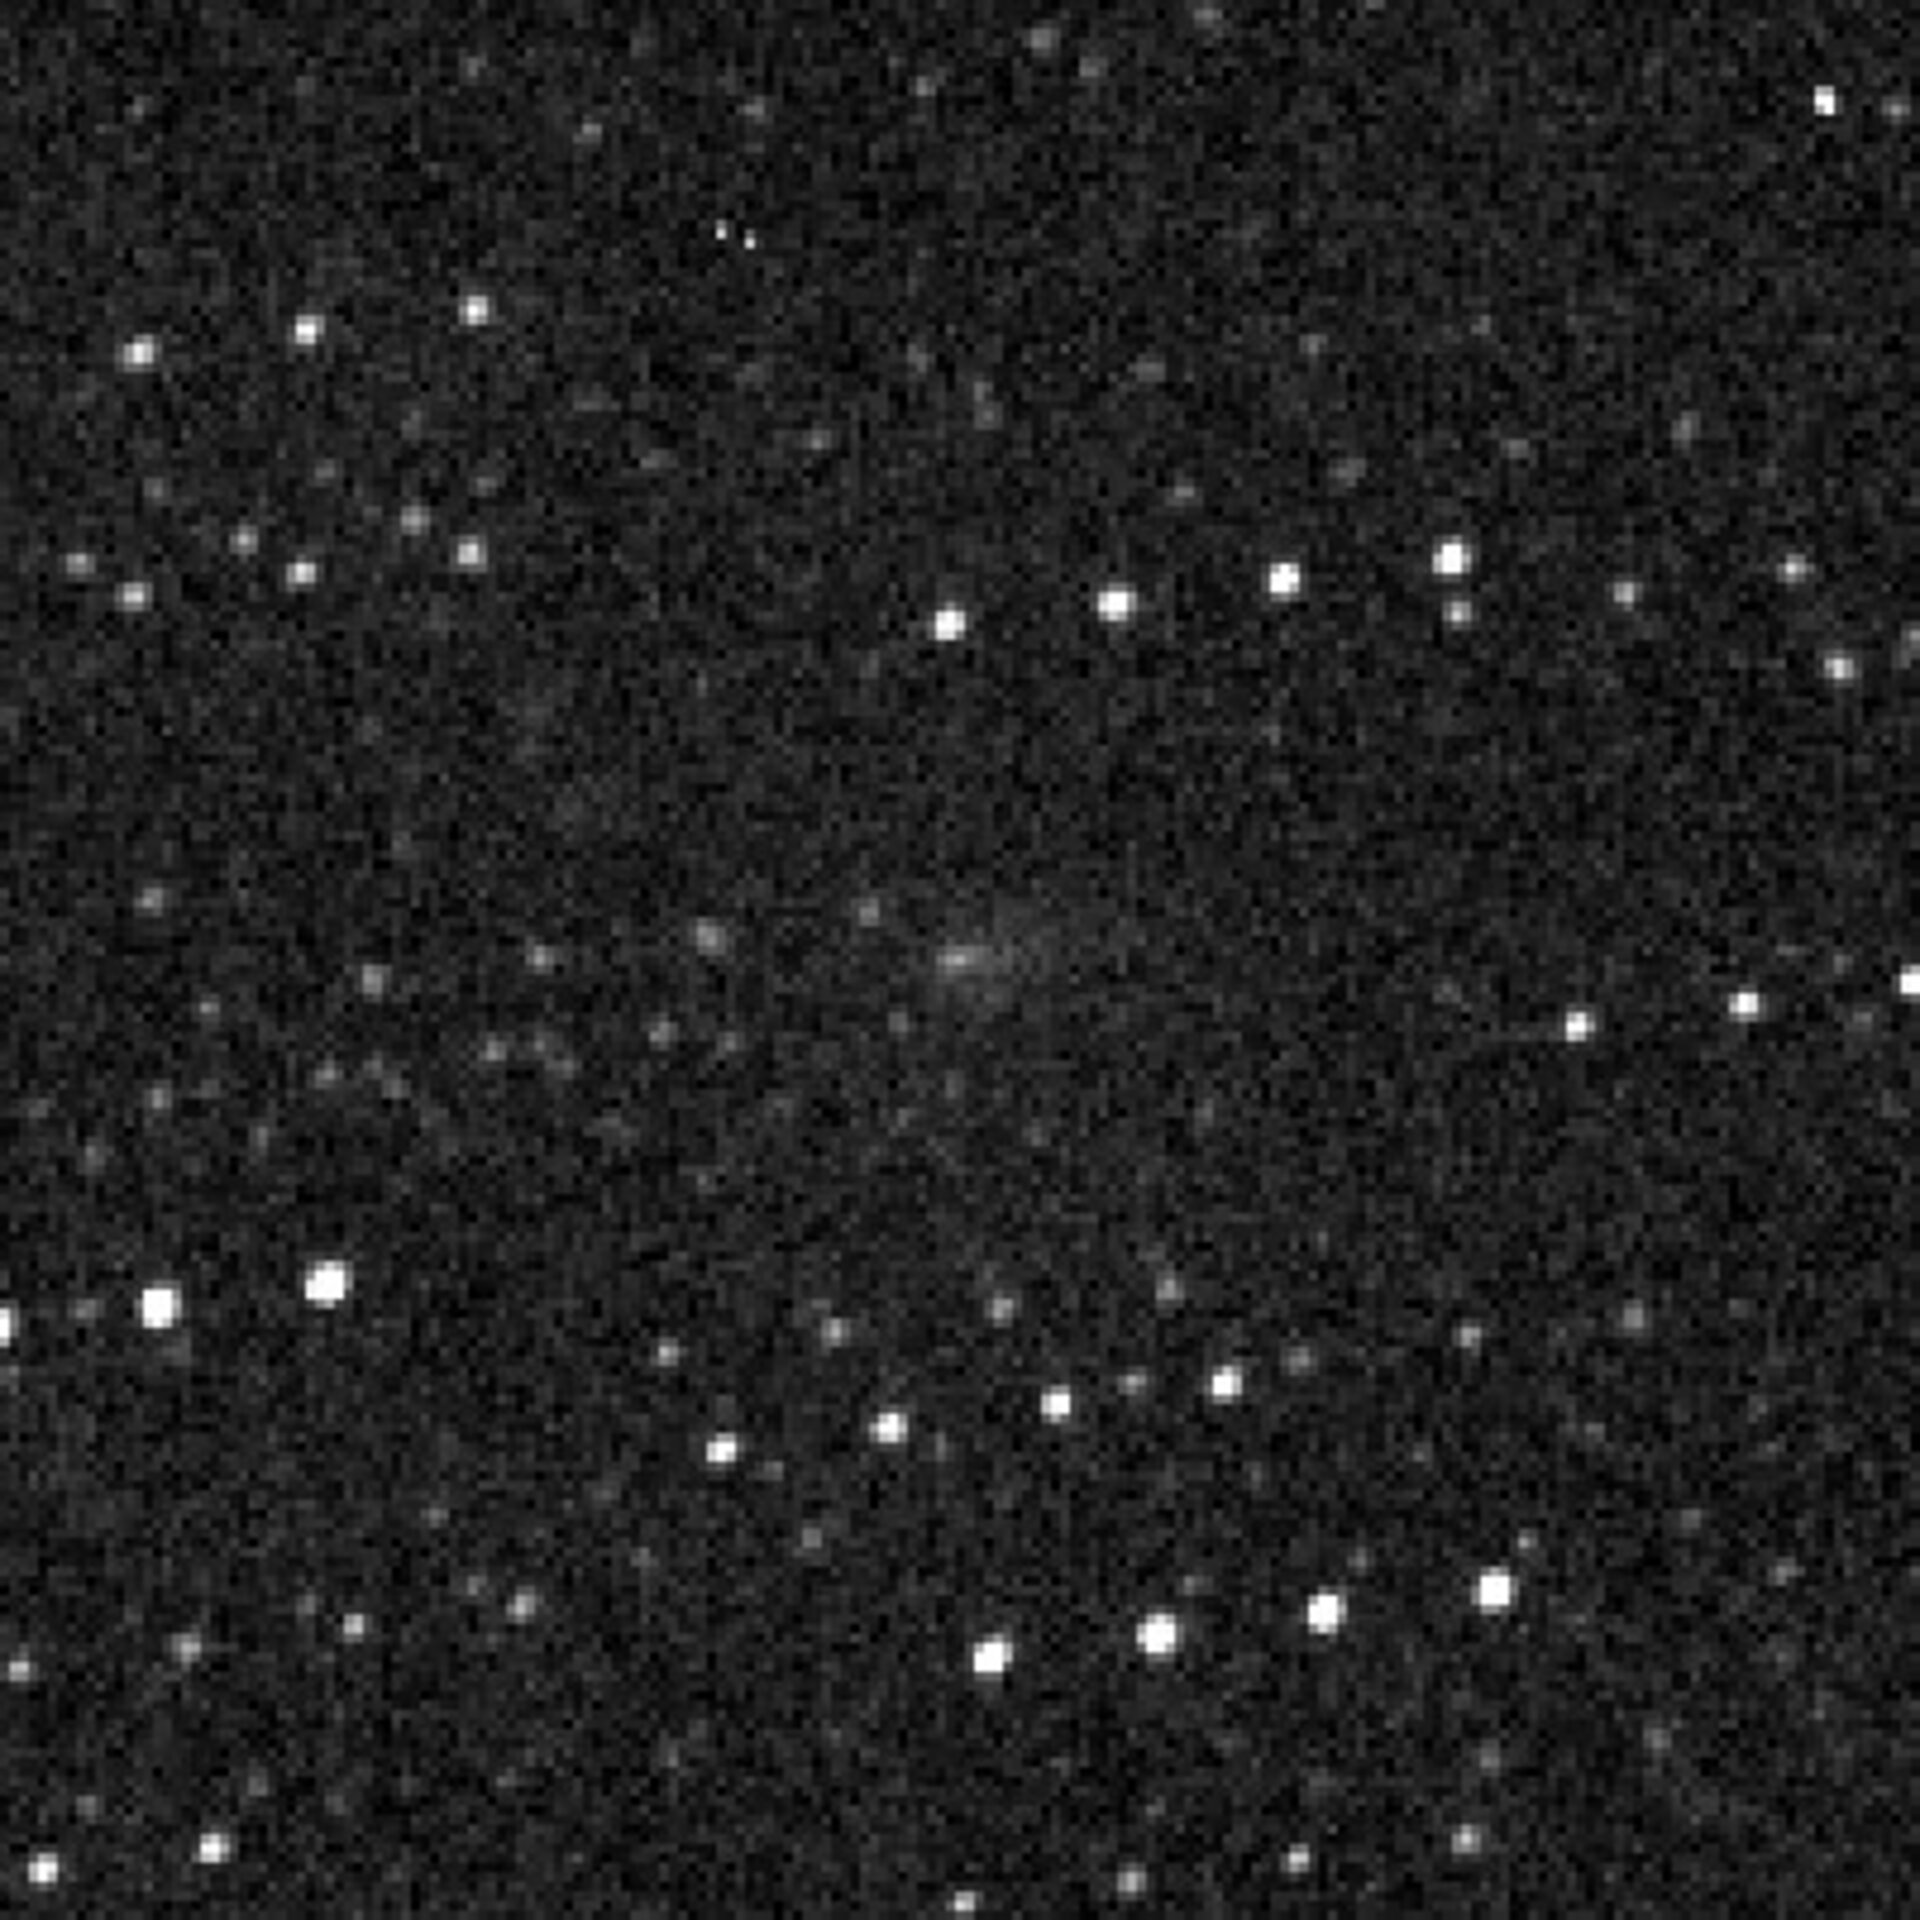 Comet P/2014 C1 TOTAS